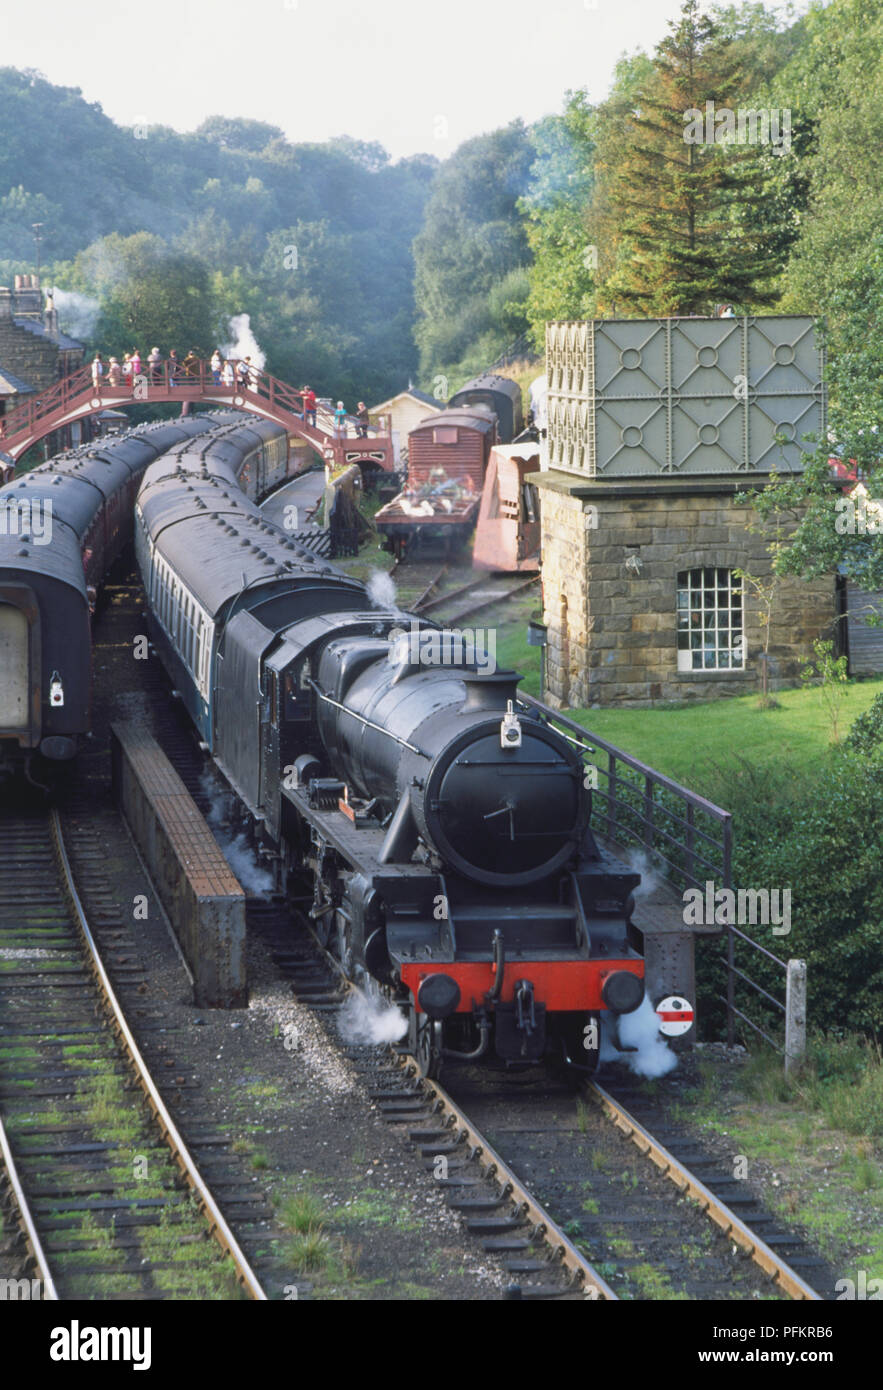 Gran Bretagna, Inghilterra, North Yorkshire, anteriore del treno a vapore che passa un altro treno durante il viaggio attraverso la campagna, la gente camminare attraverso il Footbridge in background. Foto Stock